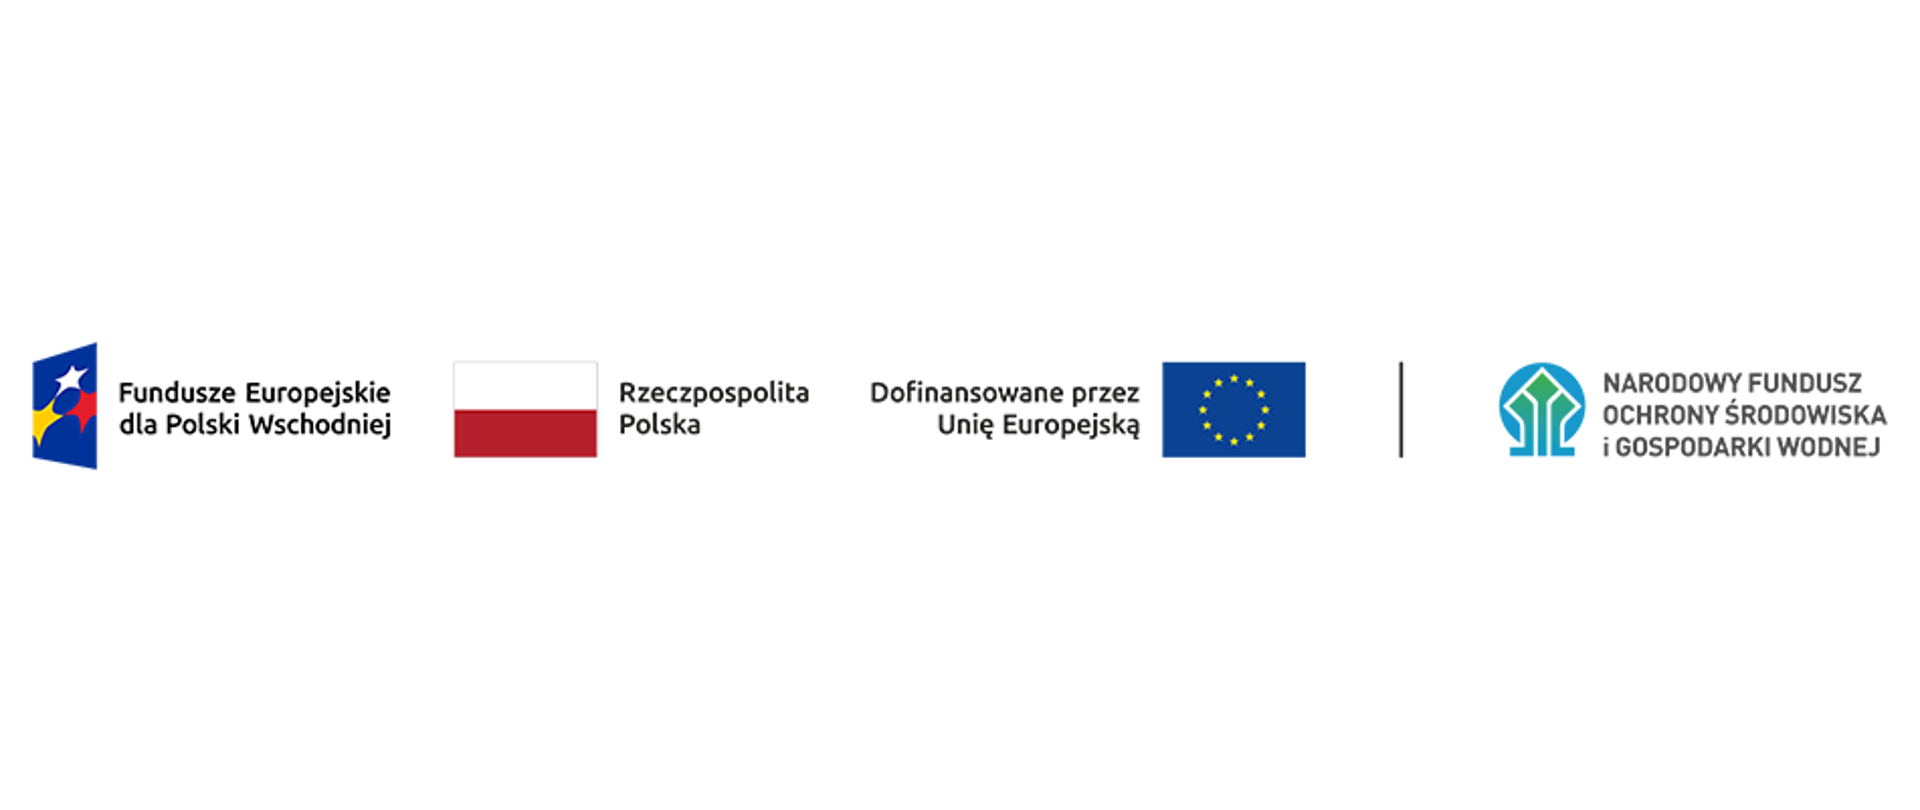 Ciąg znaków, od lewej: Fundusze Europejskie dla Polski Wschodniej, Rzeczpospolita Polska, Dofinansowane przez Unię Europejską i Narodowy Fundusz Ochrony Środowiska i Gospodarki Wodnej